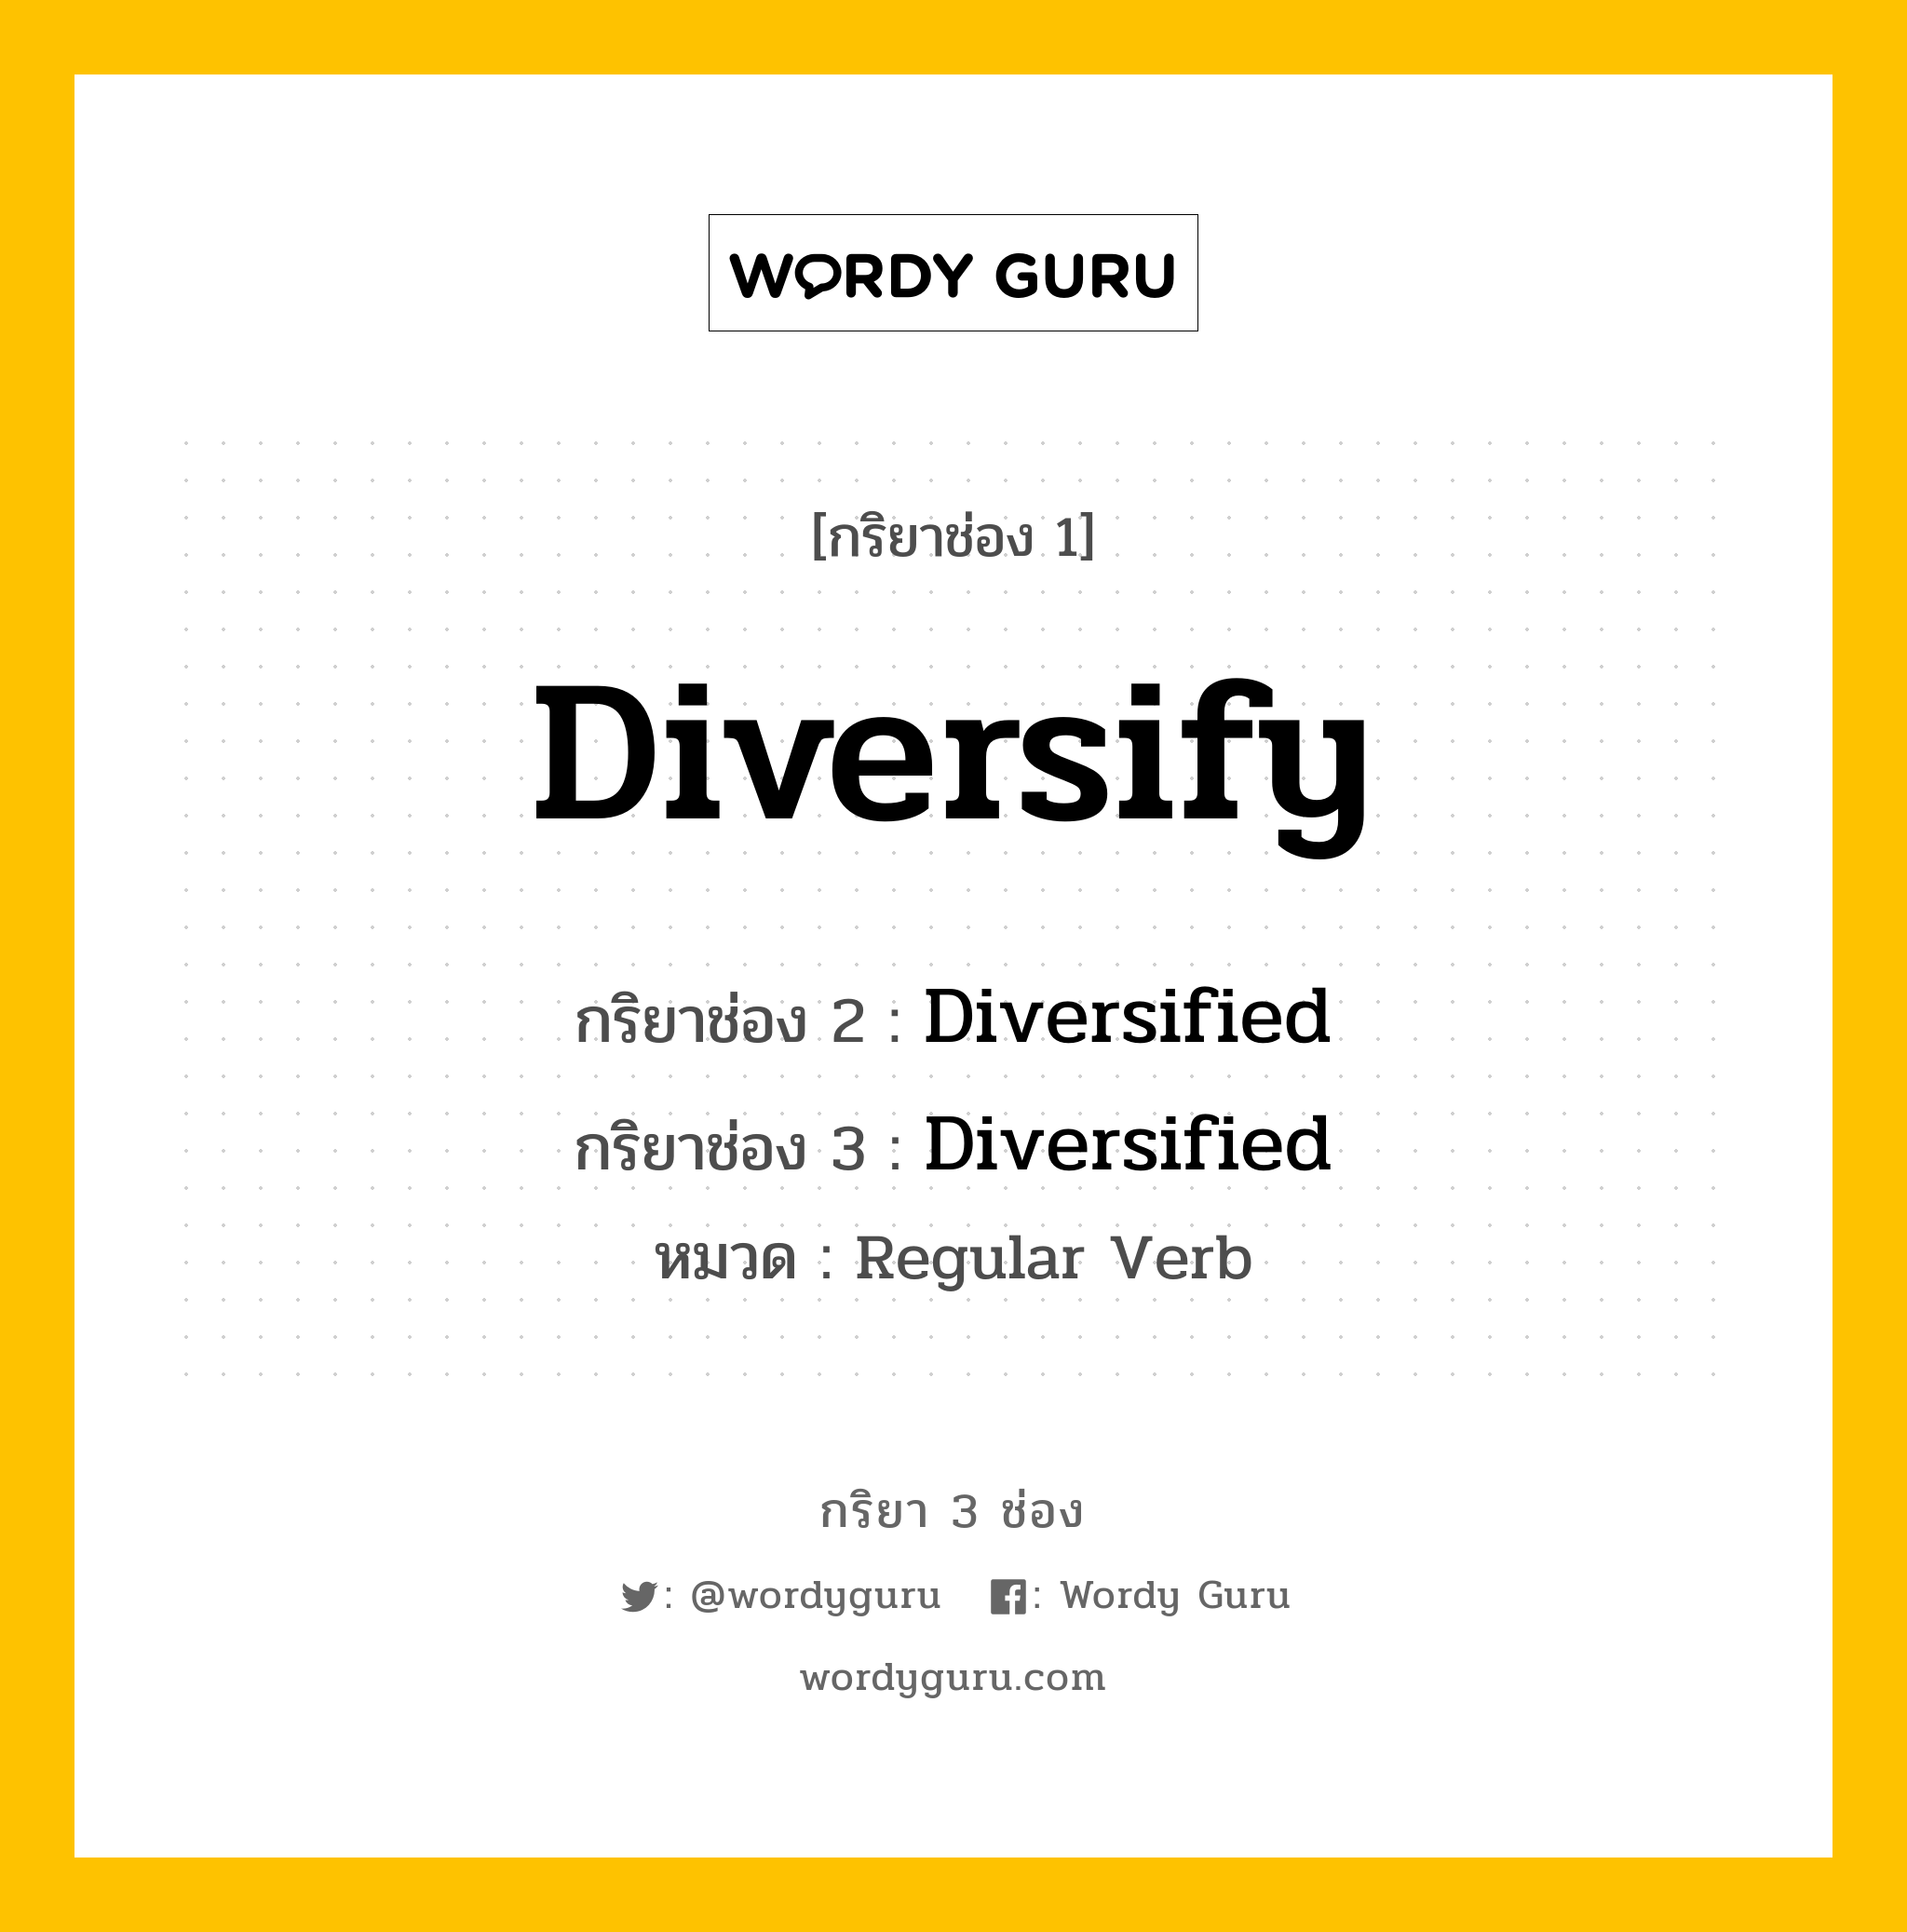 กริยา 3 ช่อง: Diversify ช่อง 2 Diversify ช่อง 3 คืออะไร, กริยาช่อง 1 Diversify กริยาช่อง 2 Diversified กริยาช่อง 3 Diversified หมวด Regular Verb หมวด Regular Verb